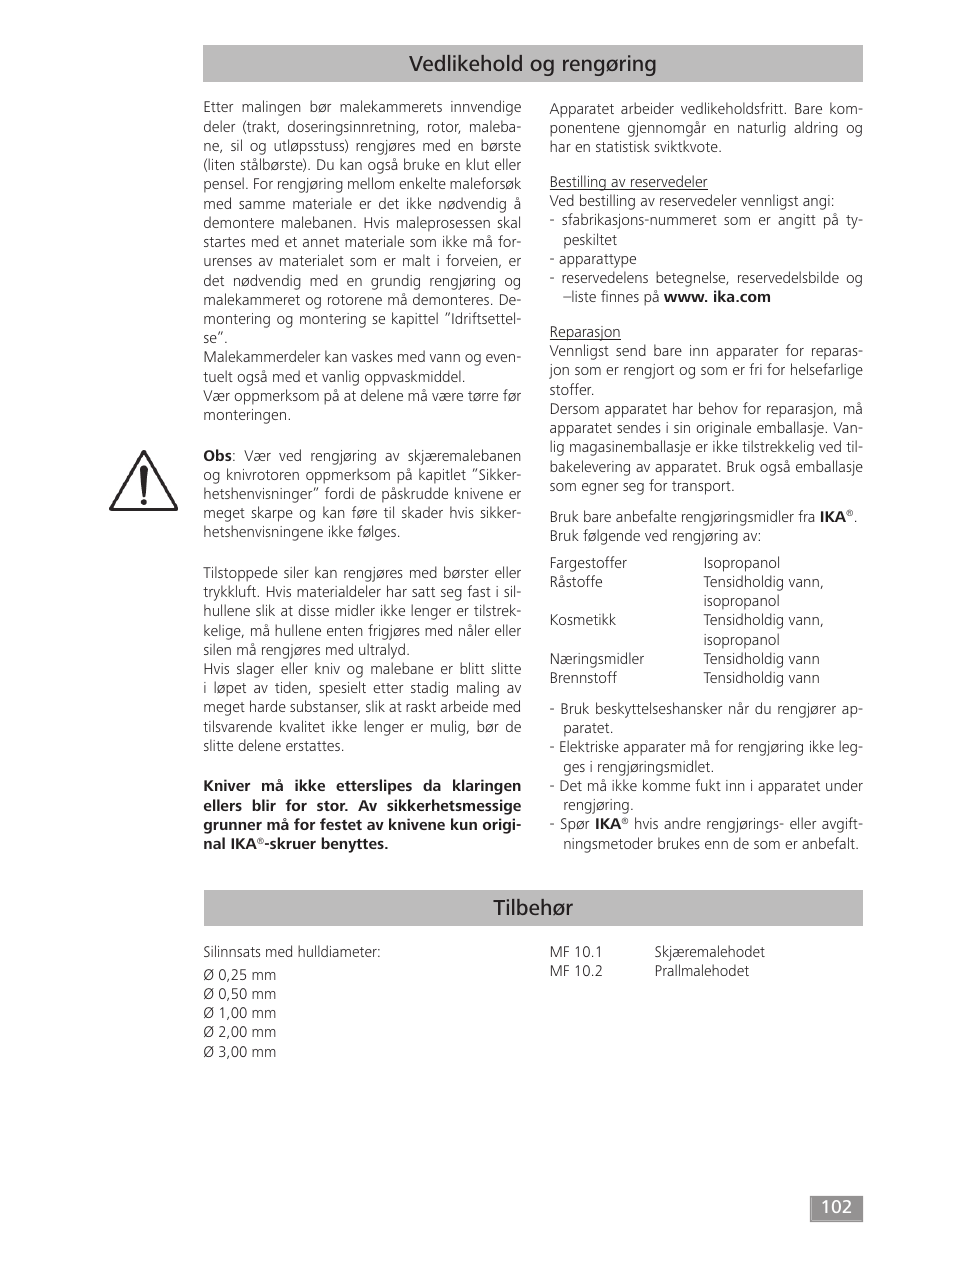 Tilbehør, Vedlikehold og rengøring | IKA MF 10 basic User Manual | Page 102 / 140